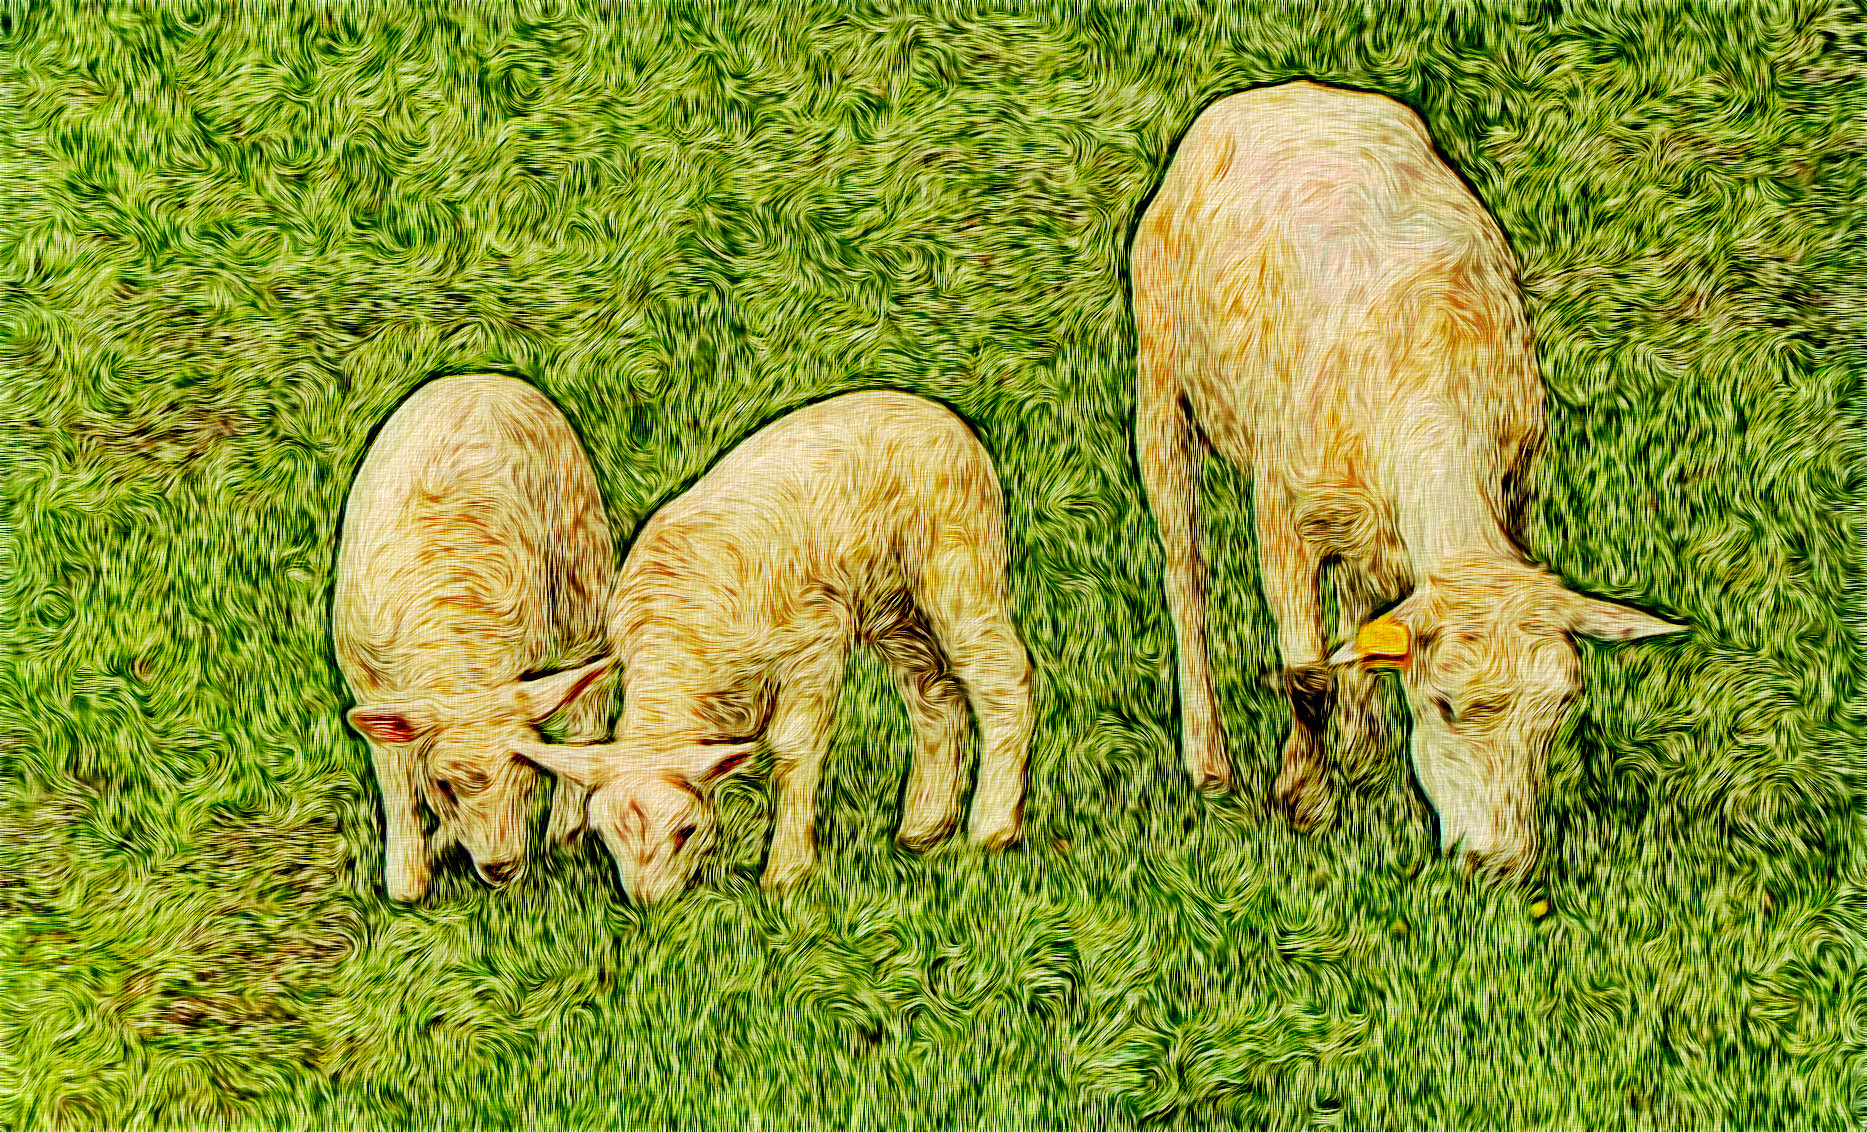 lamb-2-1248241_Graphic_Impasto_Effect_Jvid_R.jpg